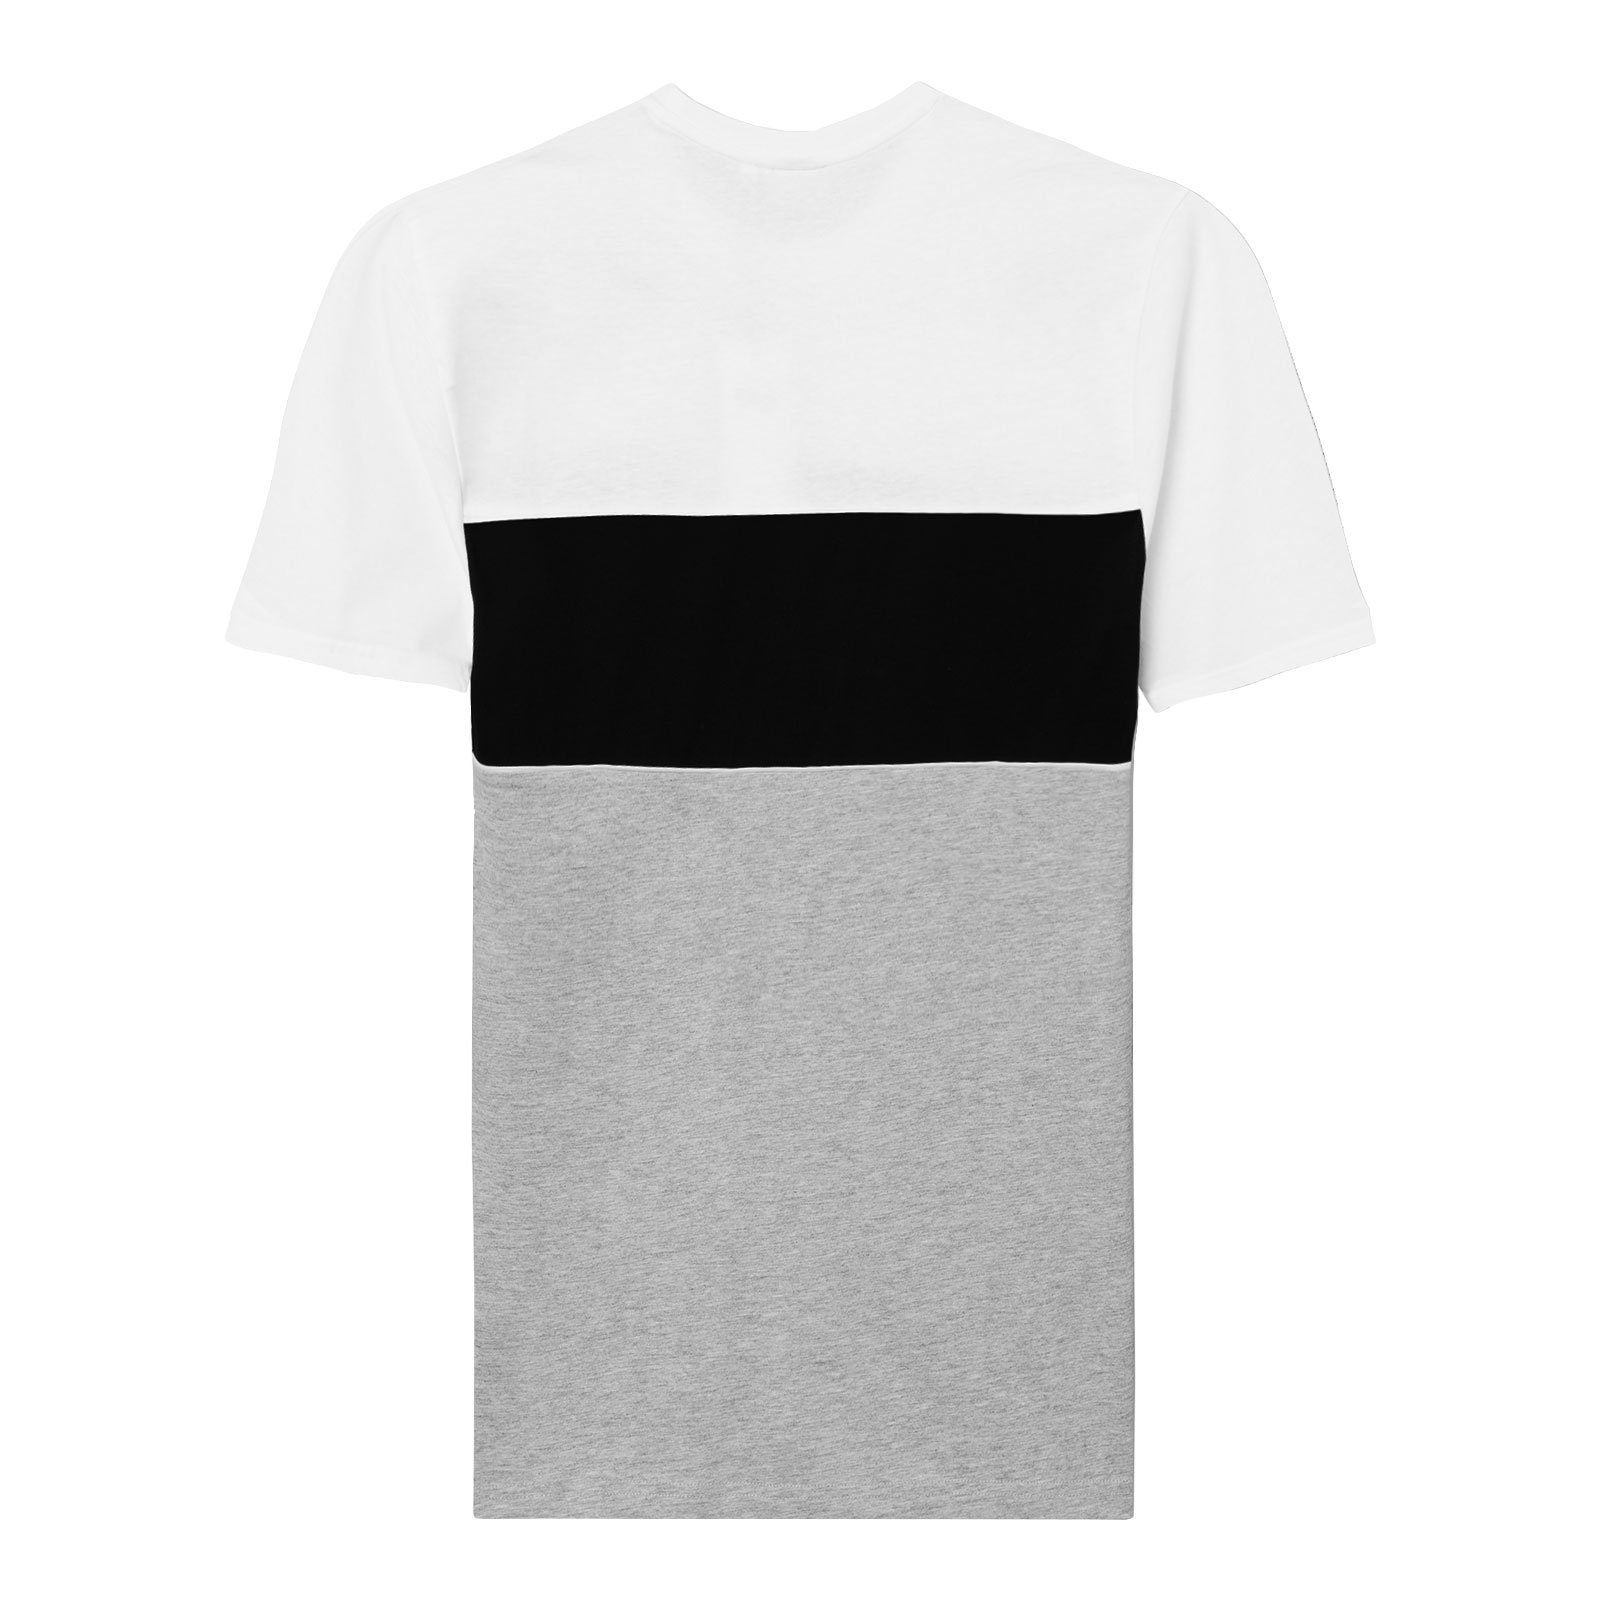 Fila T-Shirt light / Men white bros melange black bright / Tee Anoki grey mit Blocked Markenschriftzug A495